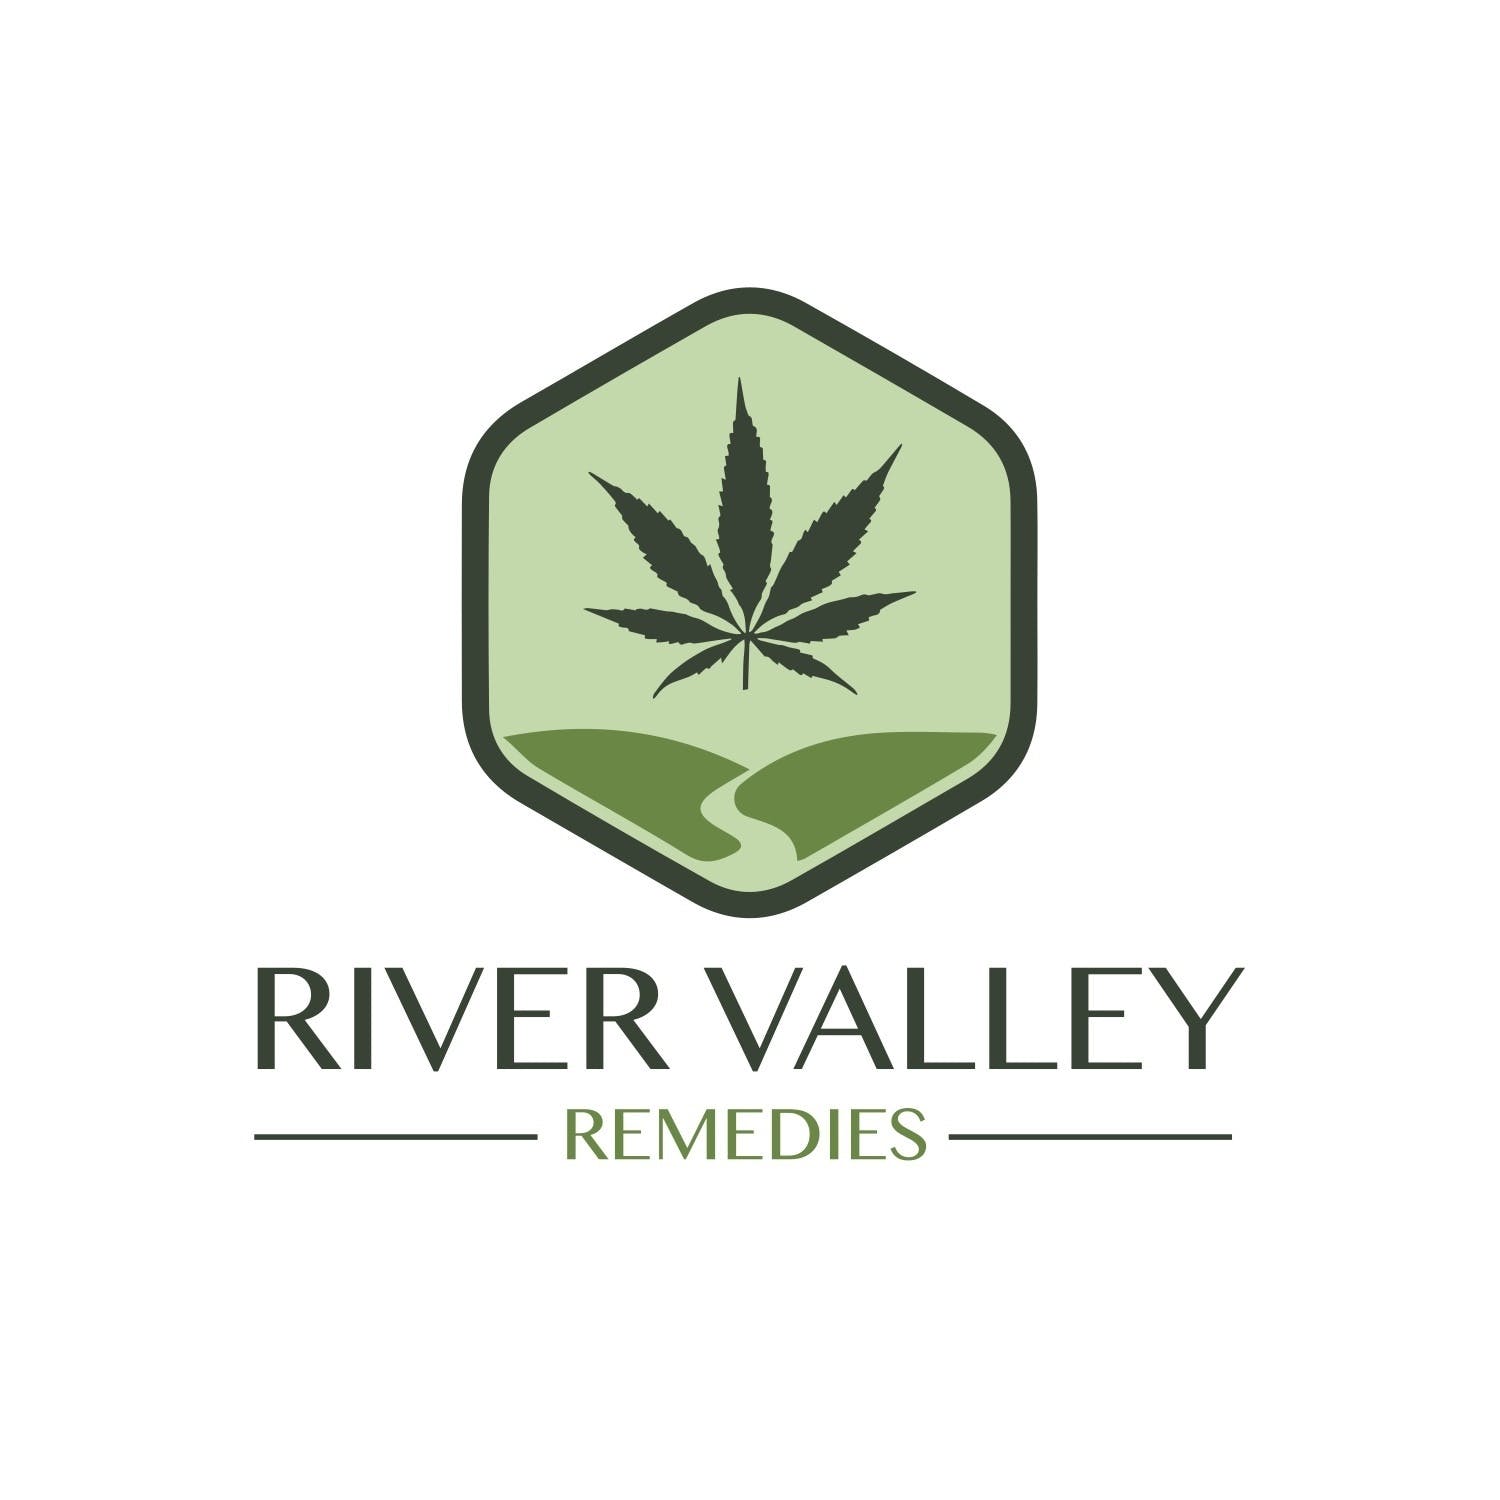 River Valley Remedies - Medical Marijuana Doctors - Cannabizme.com